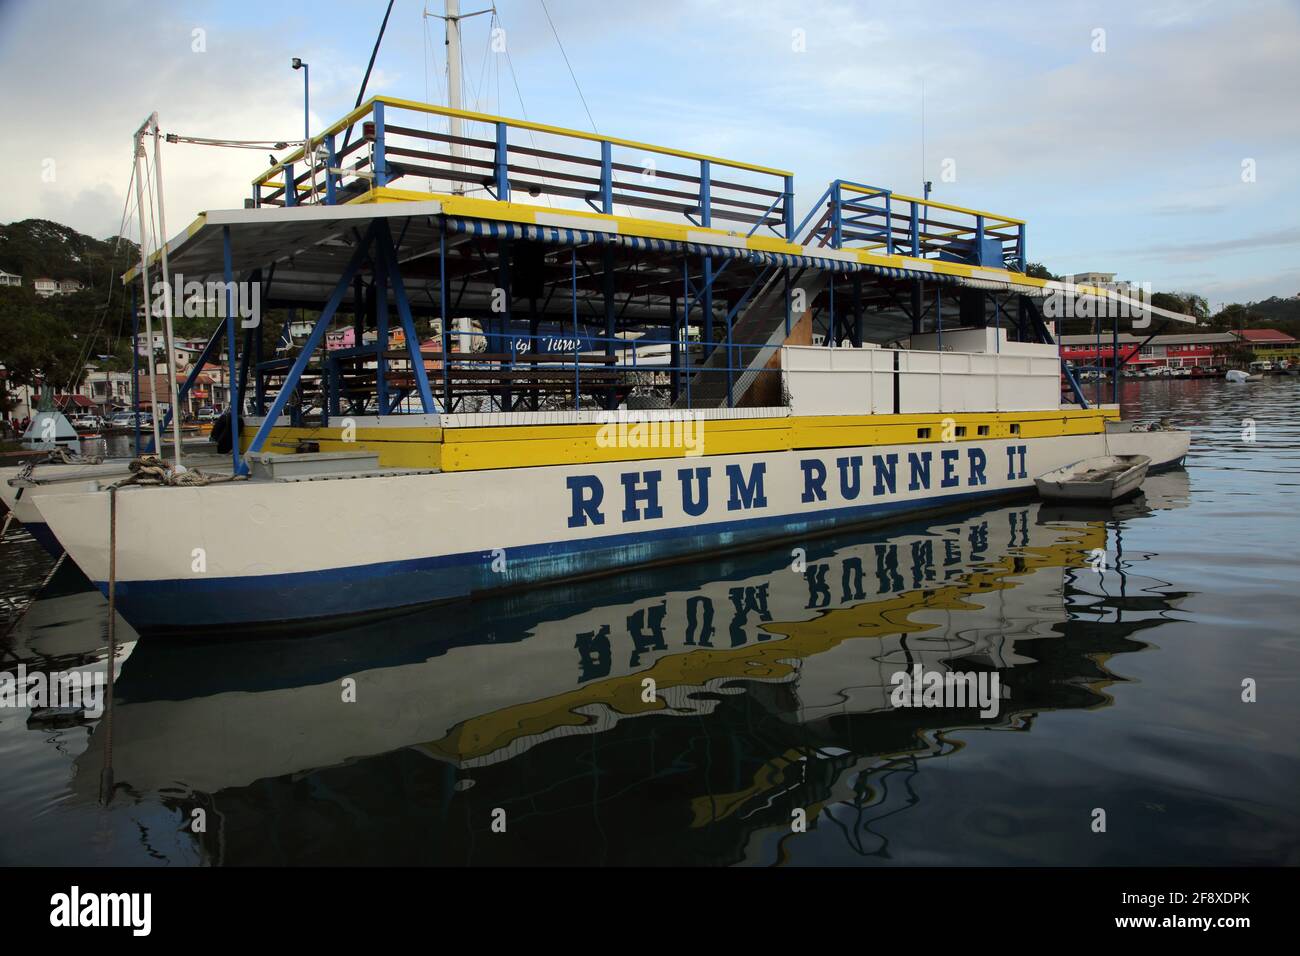 St George's Grenada Ferry vide Rhum Runner II sur la Carenage Banque D'Images